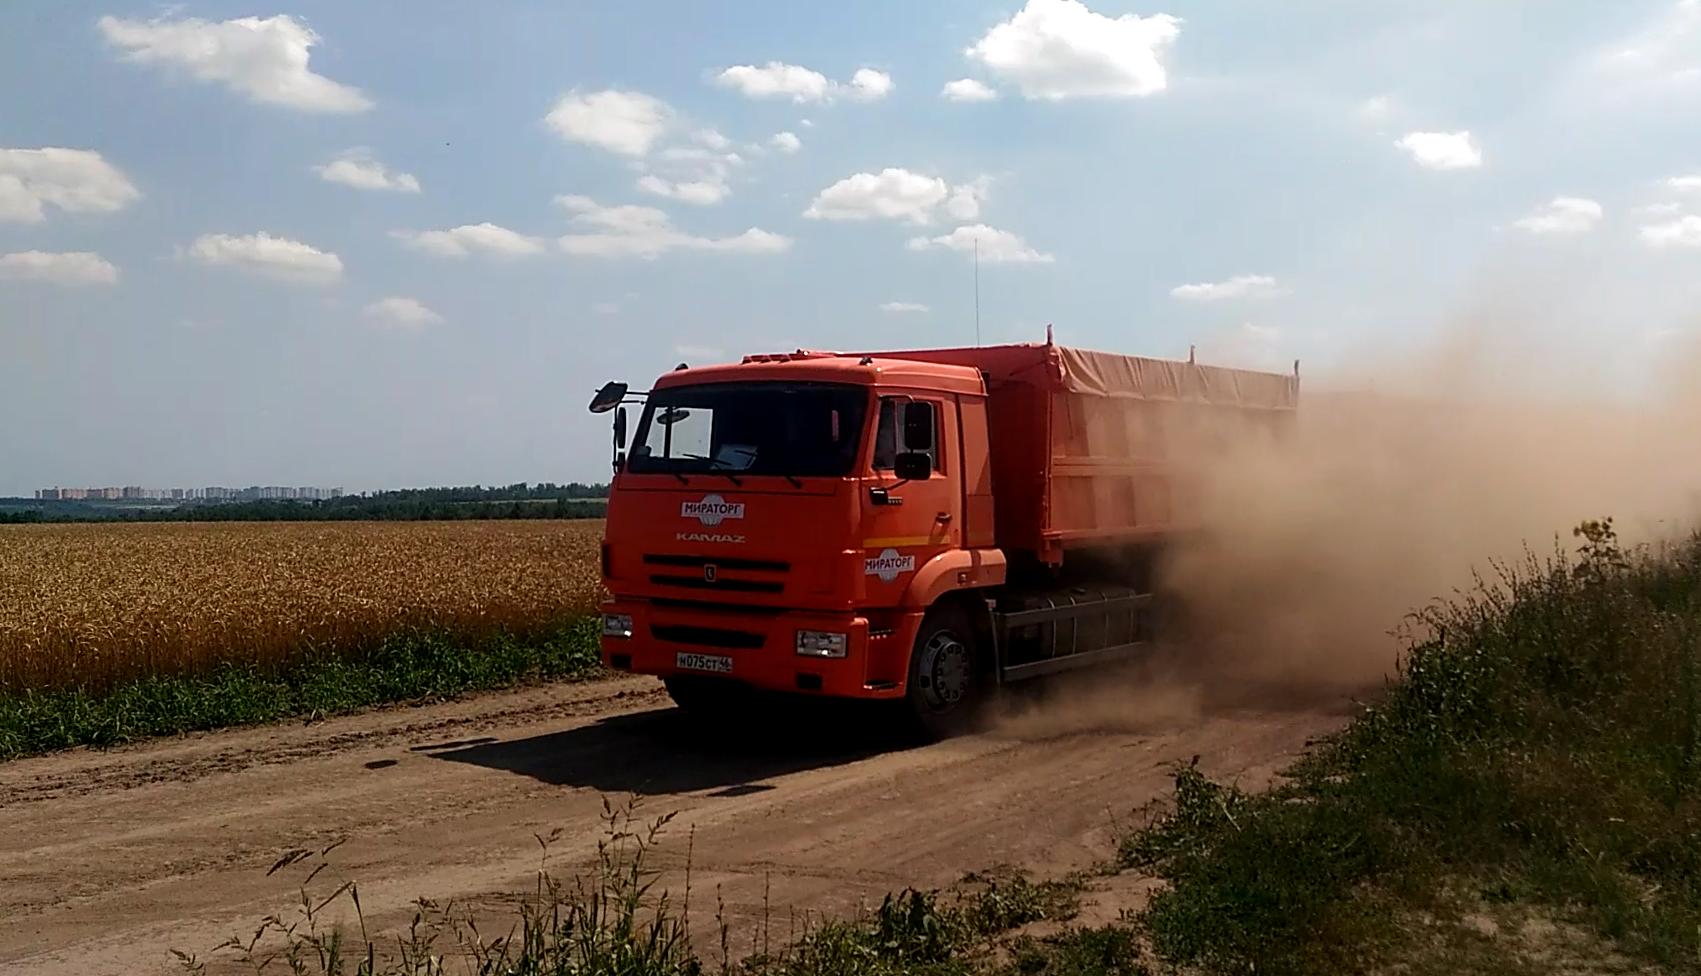 Активисты ОНФ требуют закрыть дорогу в деревне Верхняя Медведица Курской области